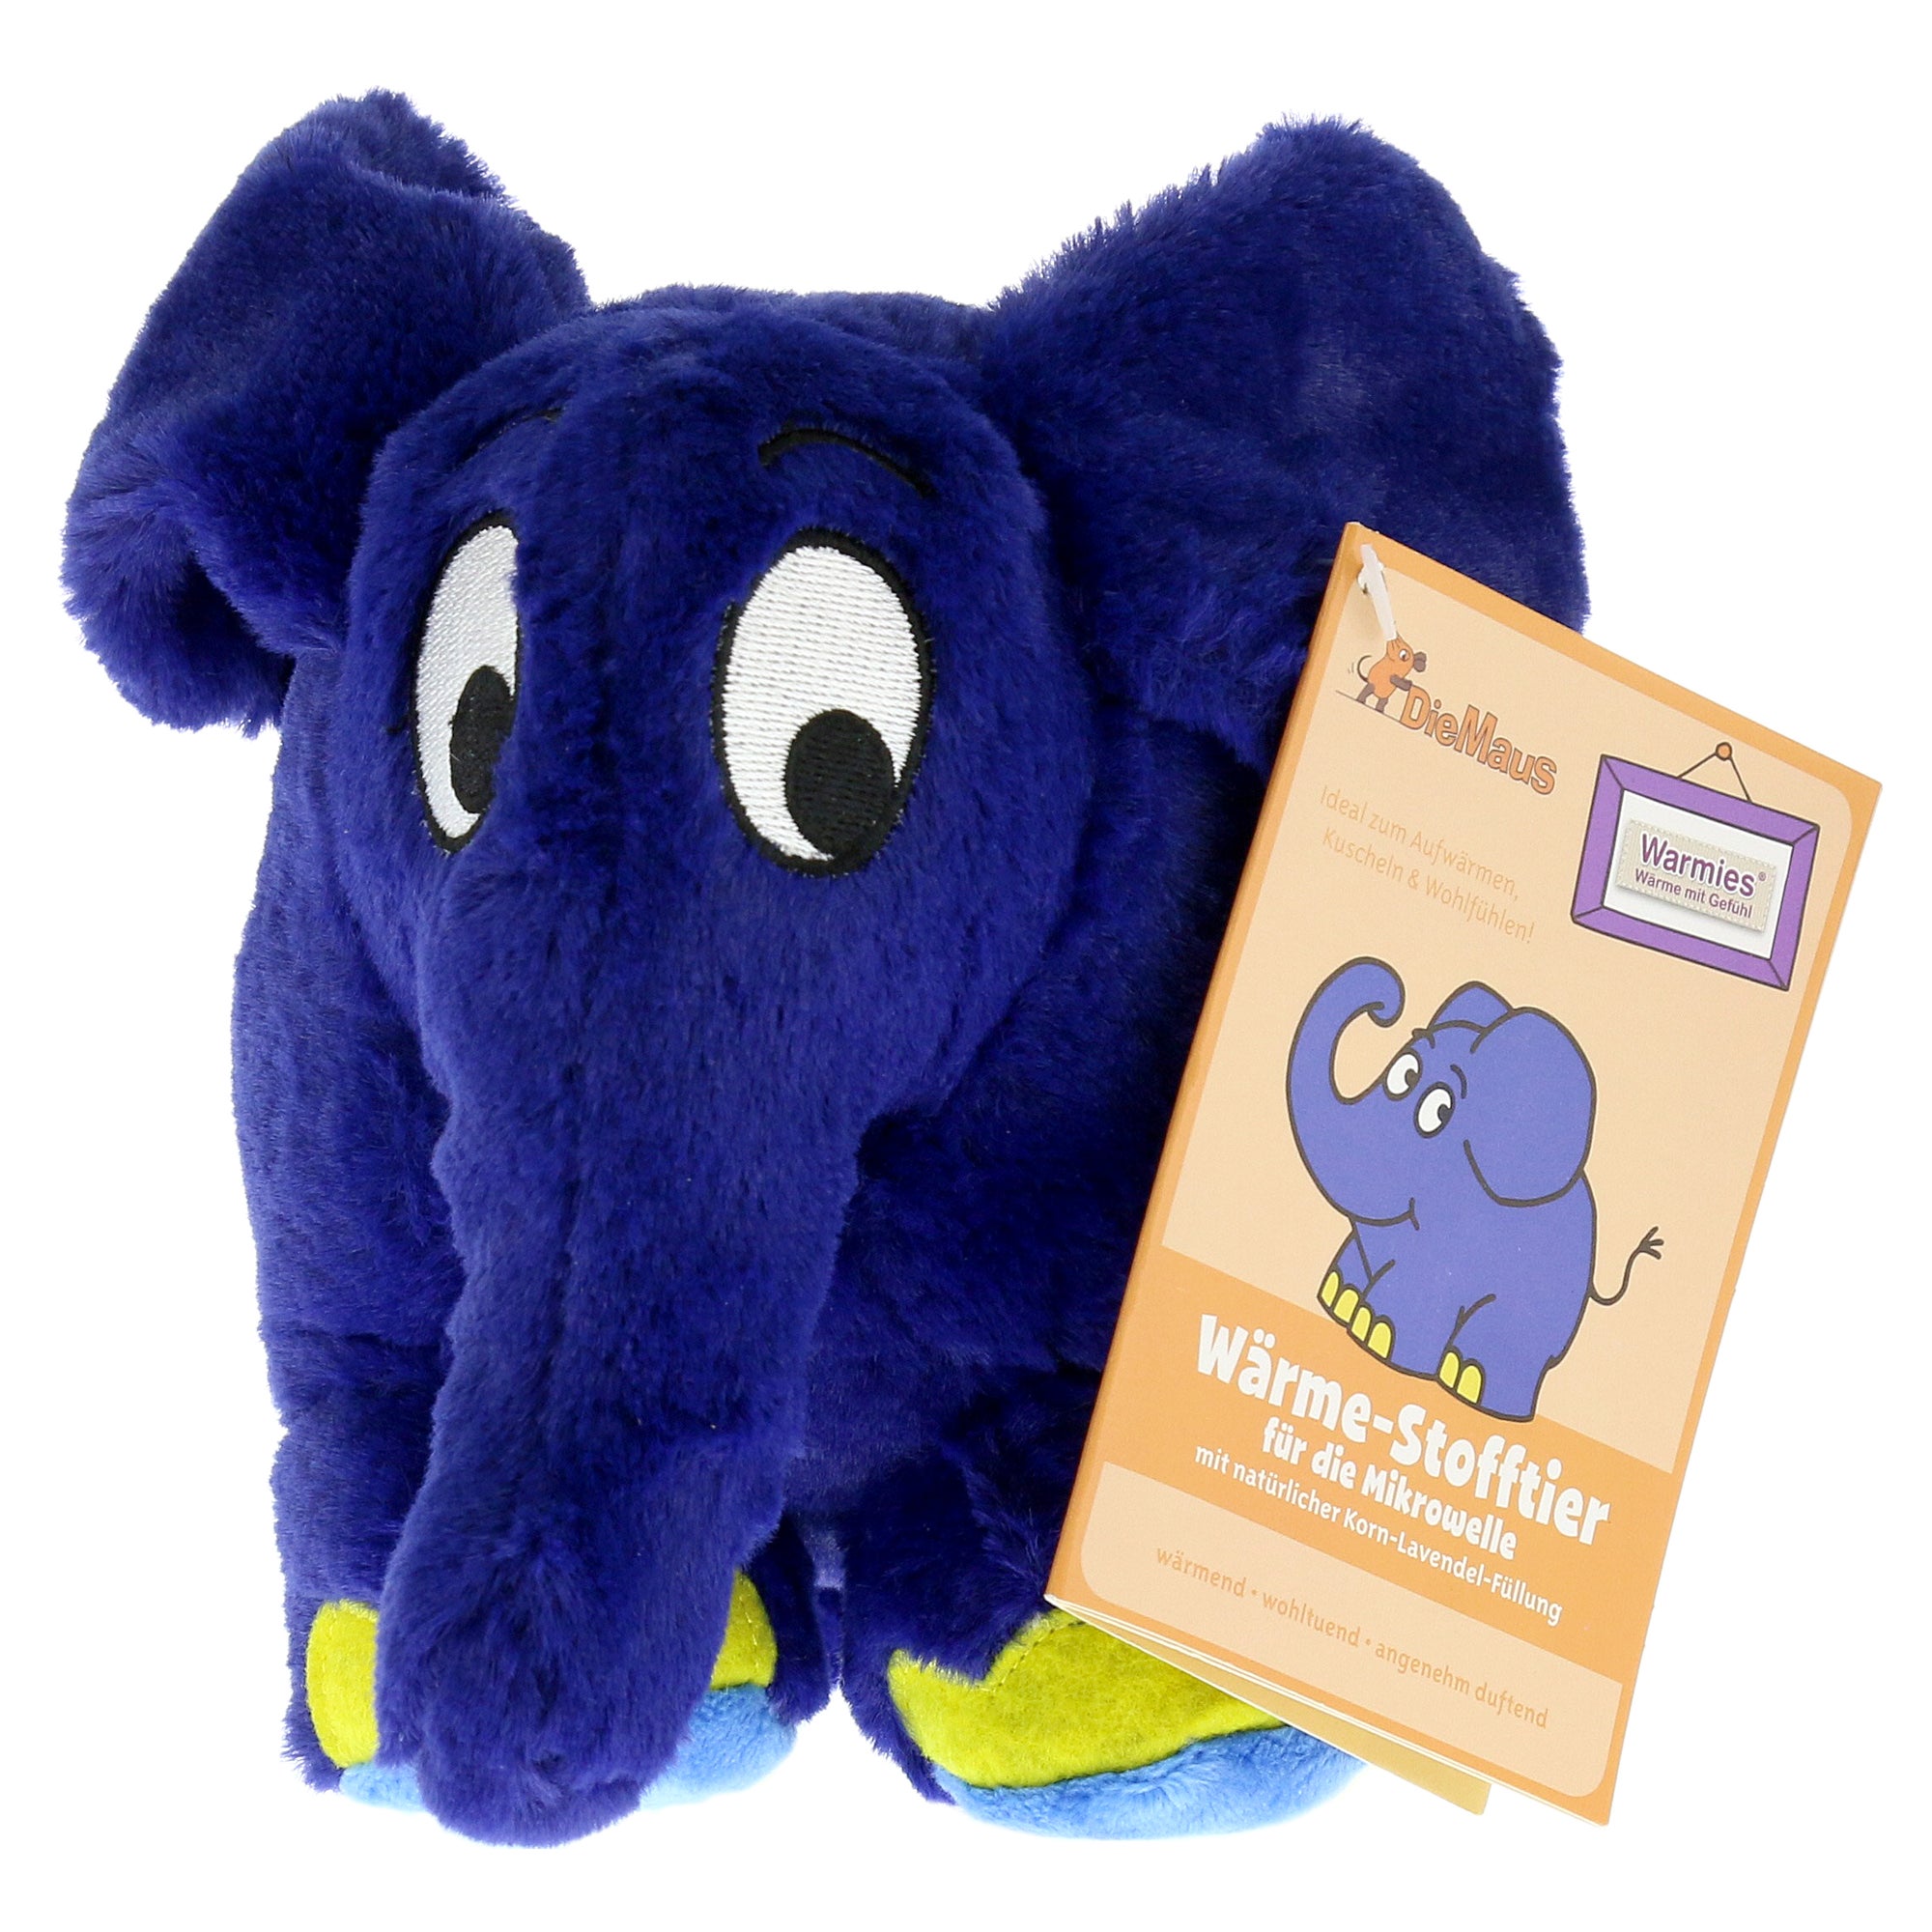 Warmies Blauer Elefant, 1 St. online kaufen | DocMorris